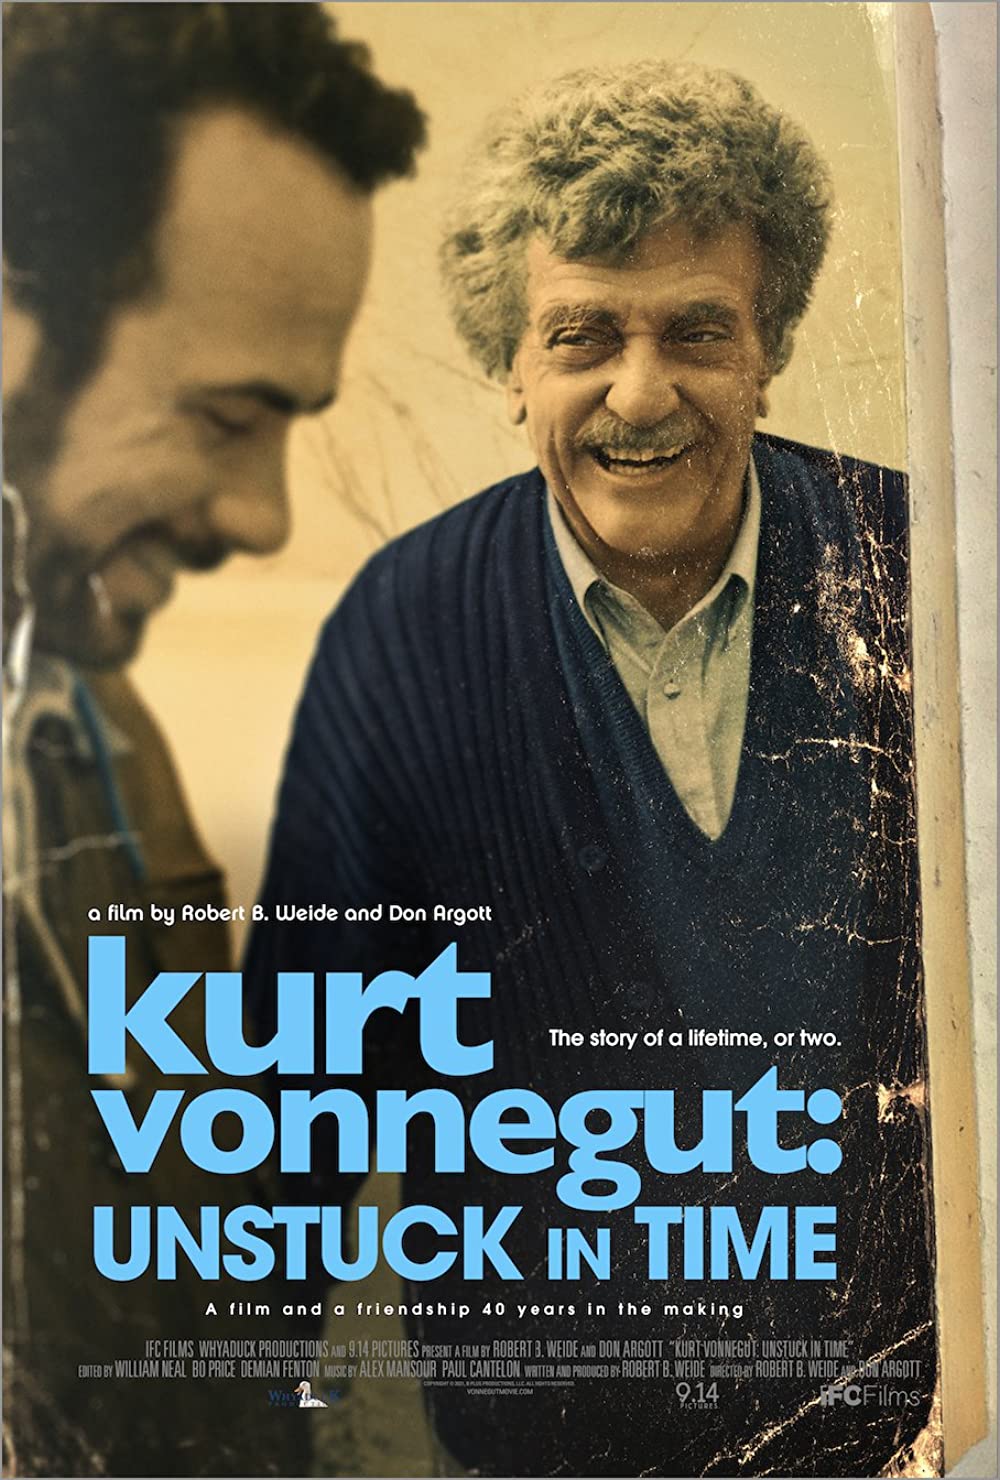 Kurt Vonnegut Unstuck in Time poster